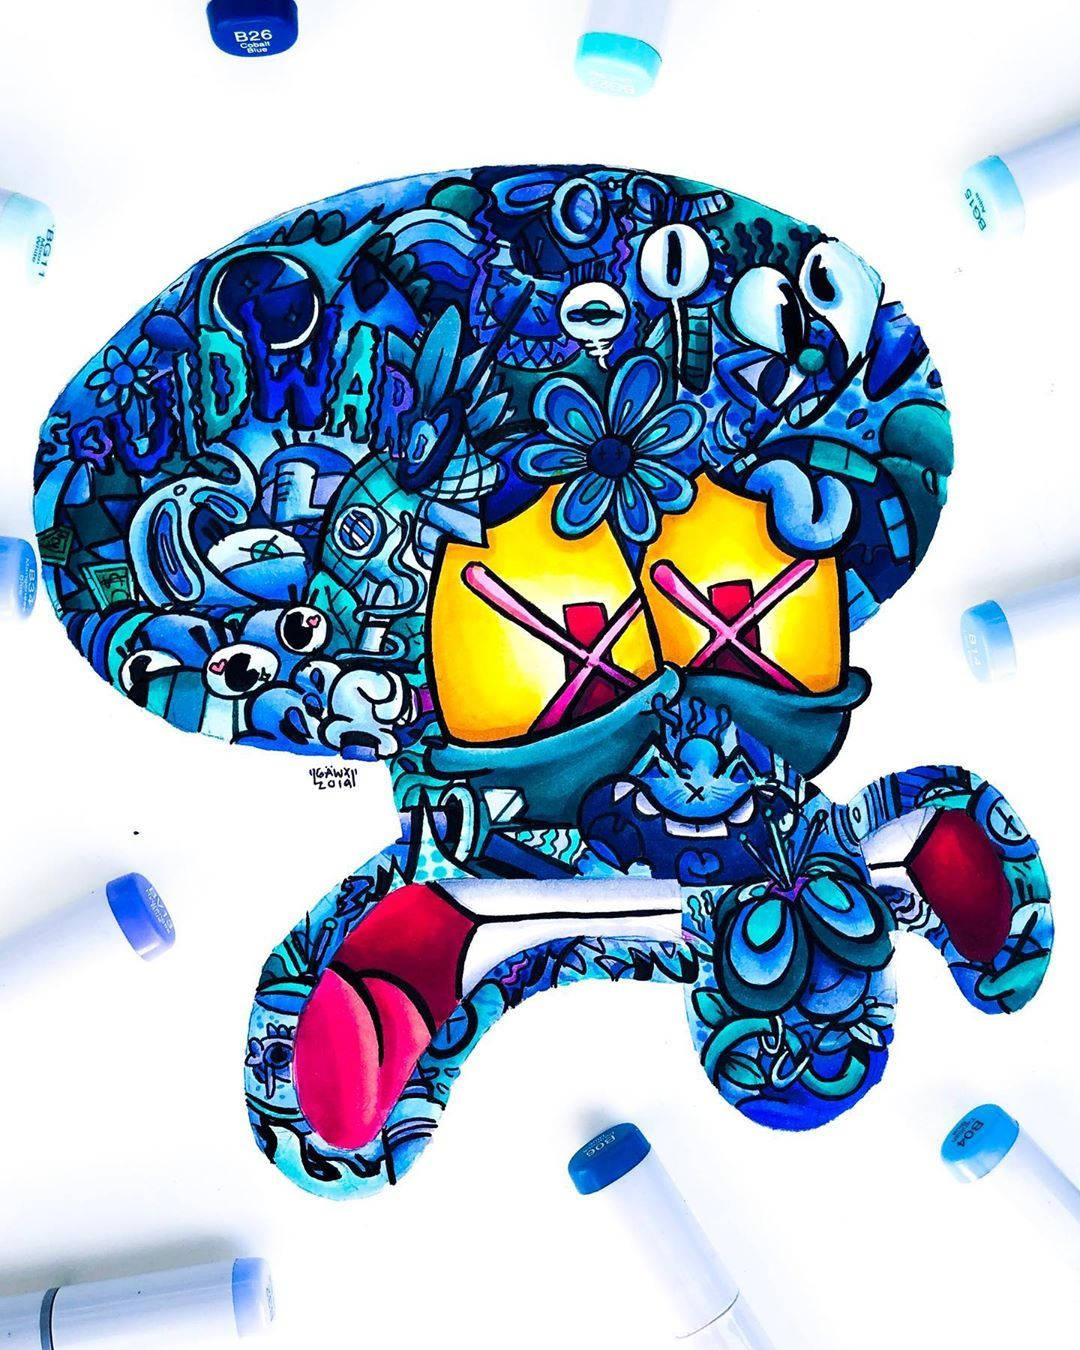 Gawx Art Blue Squidward Wallpaper